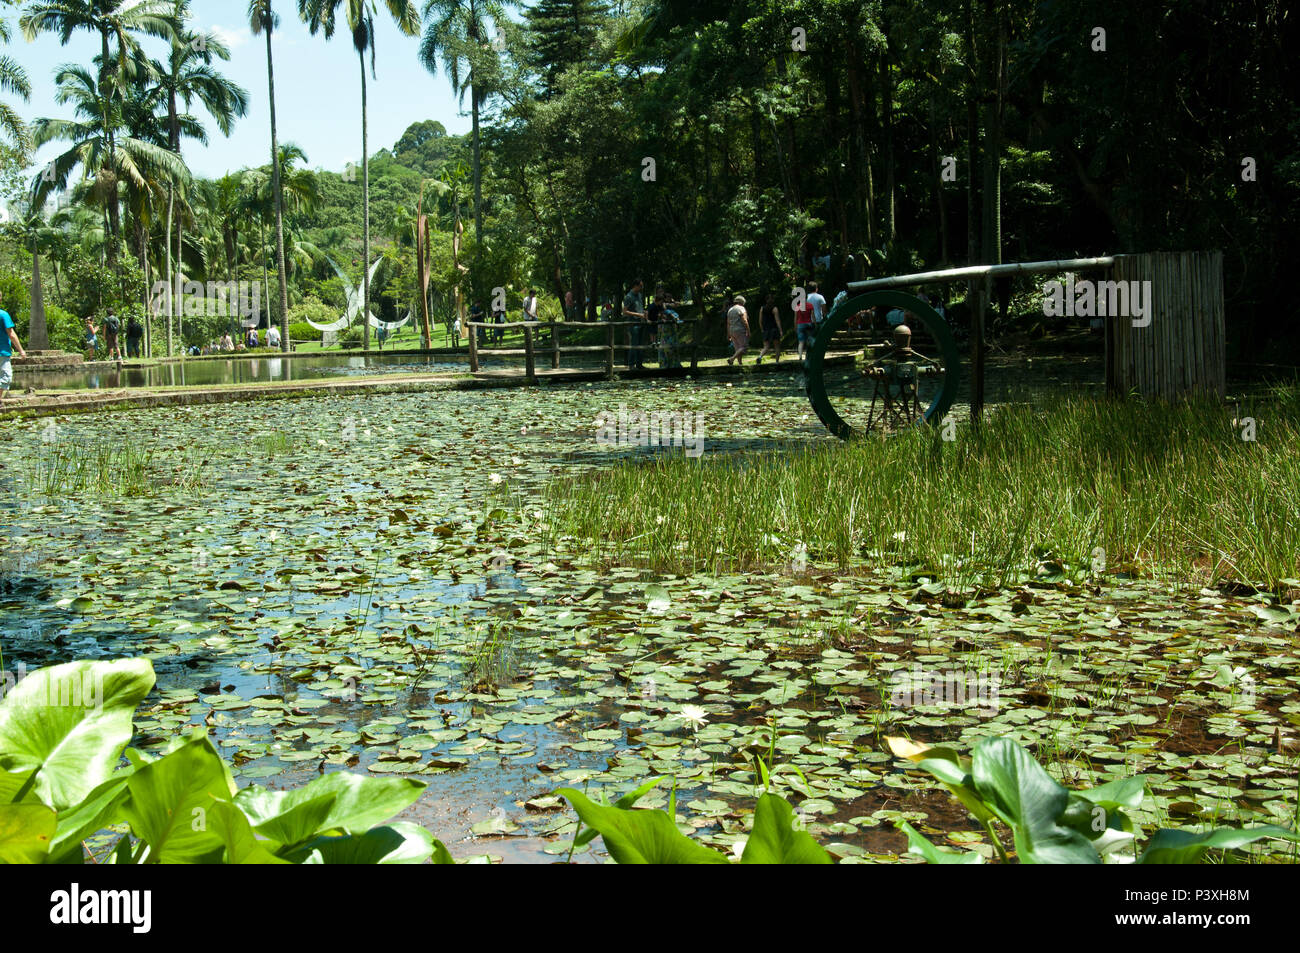 Lago das Ninféias no Jardim Botânico de São Paulo. O Lago das Ninféias é um lago artificial formado pelo represamento de águas que brotam das nascentes do riacho Ipiranga. Stock Photo